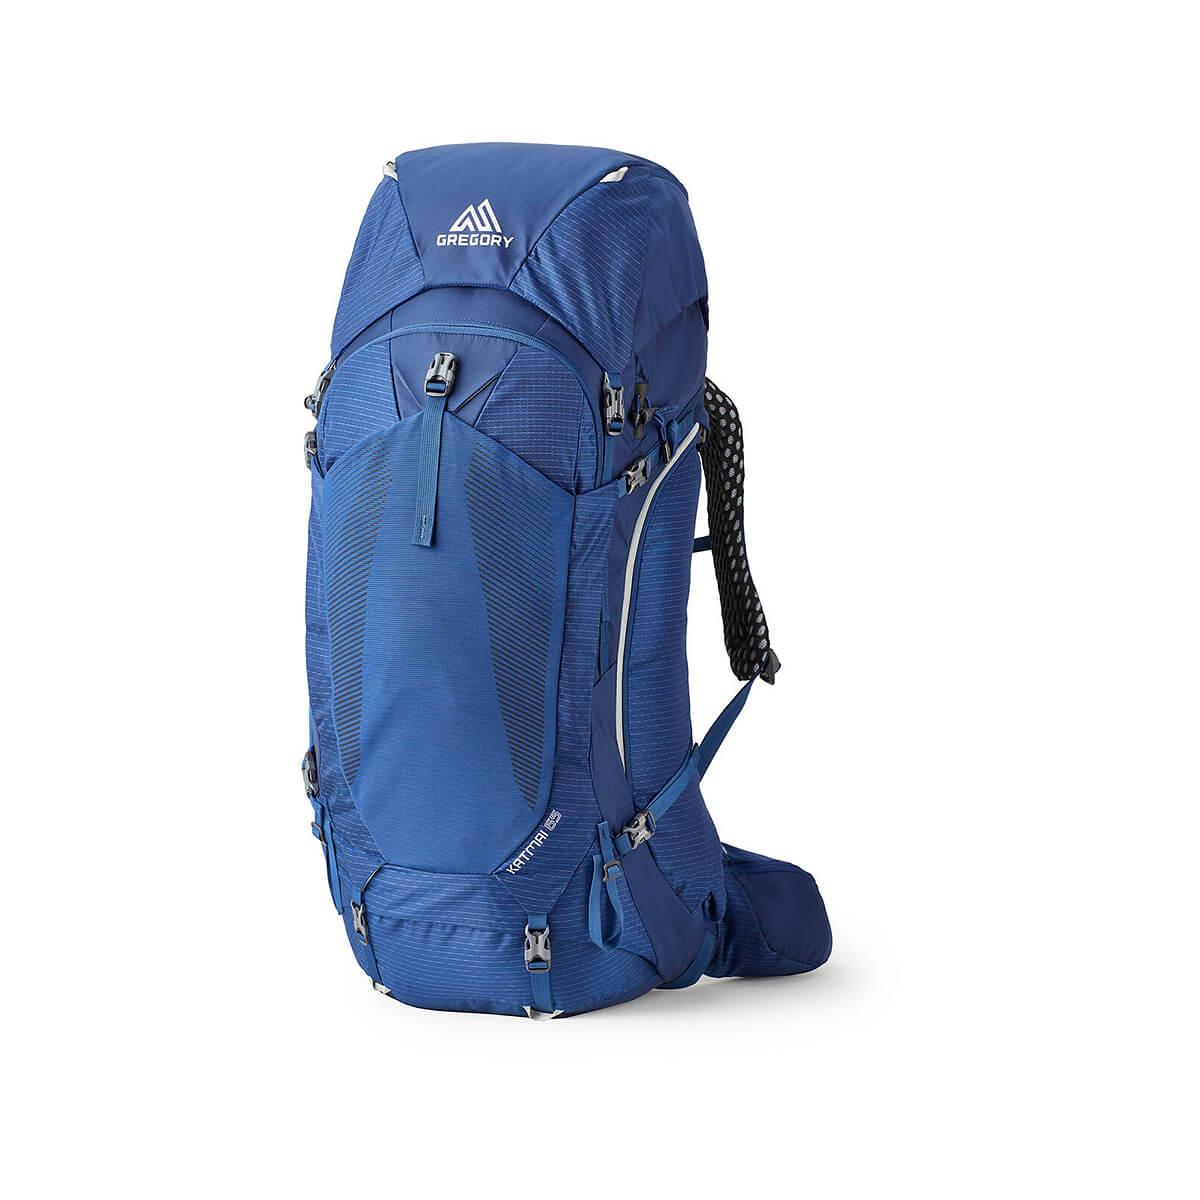  Men's Katmai Backpack - 65l Plus Size